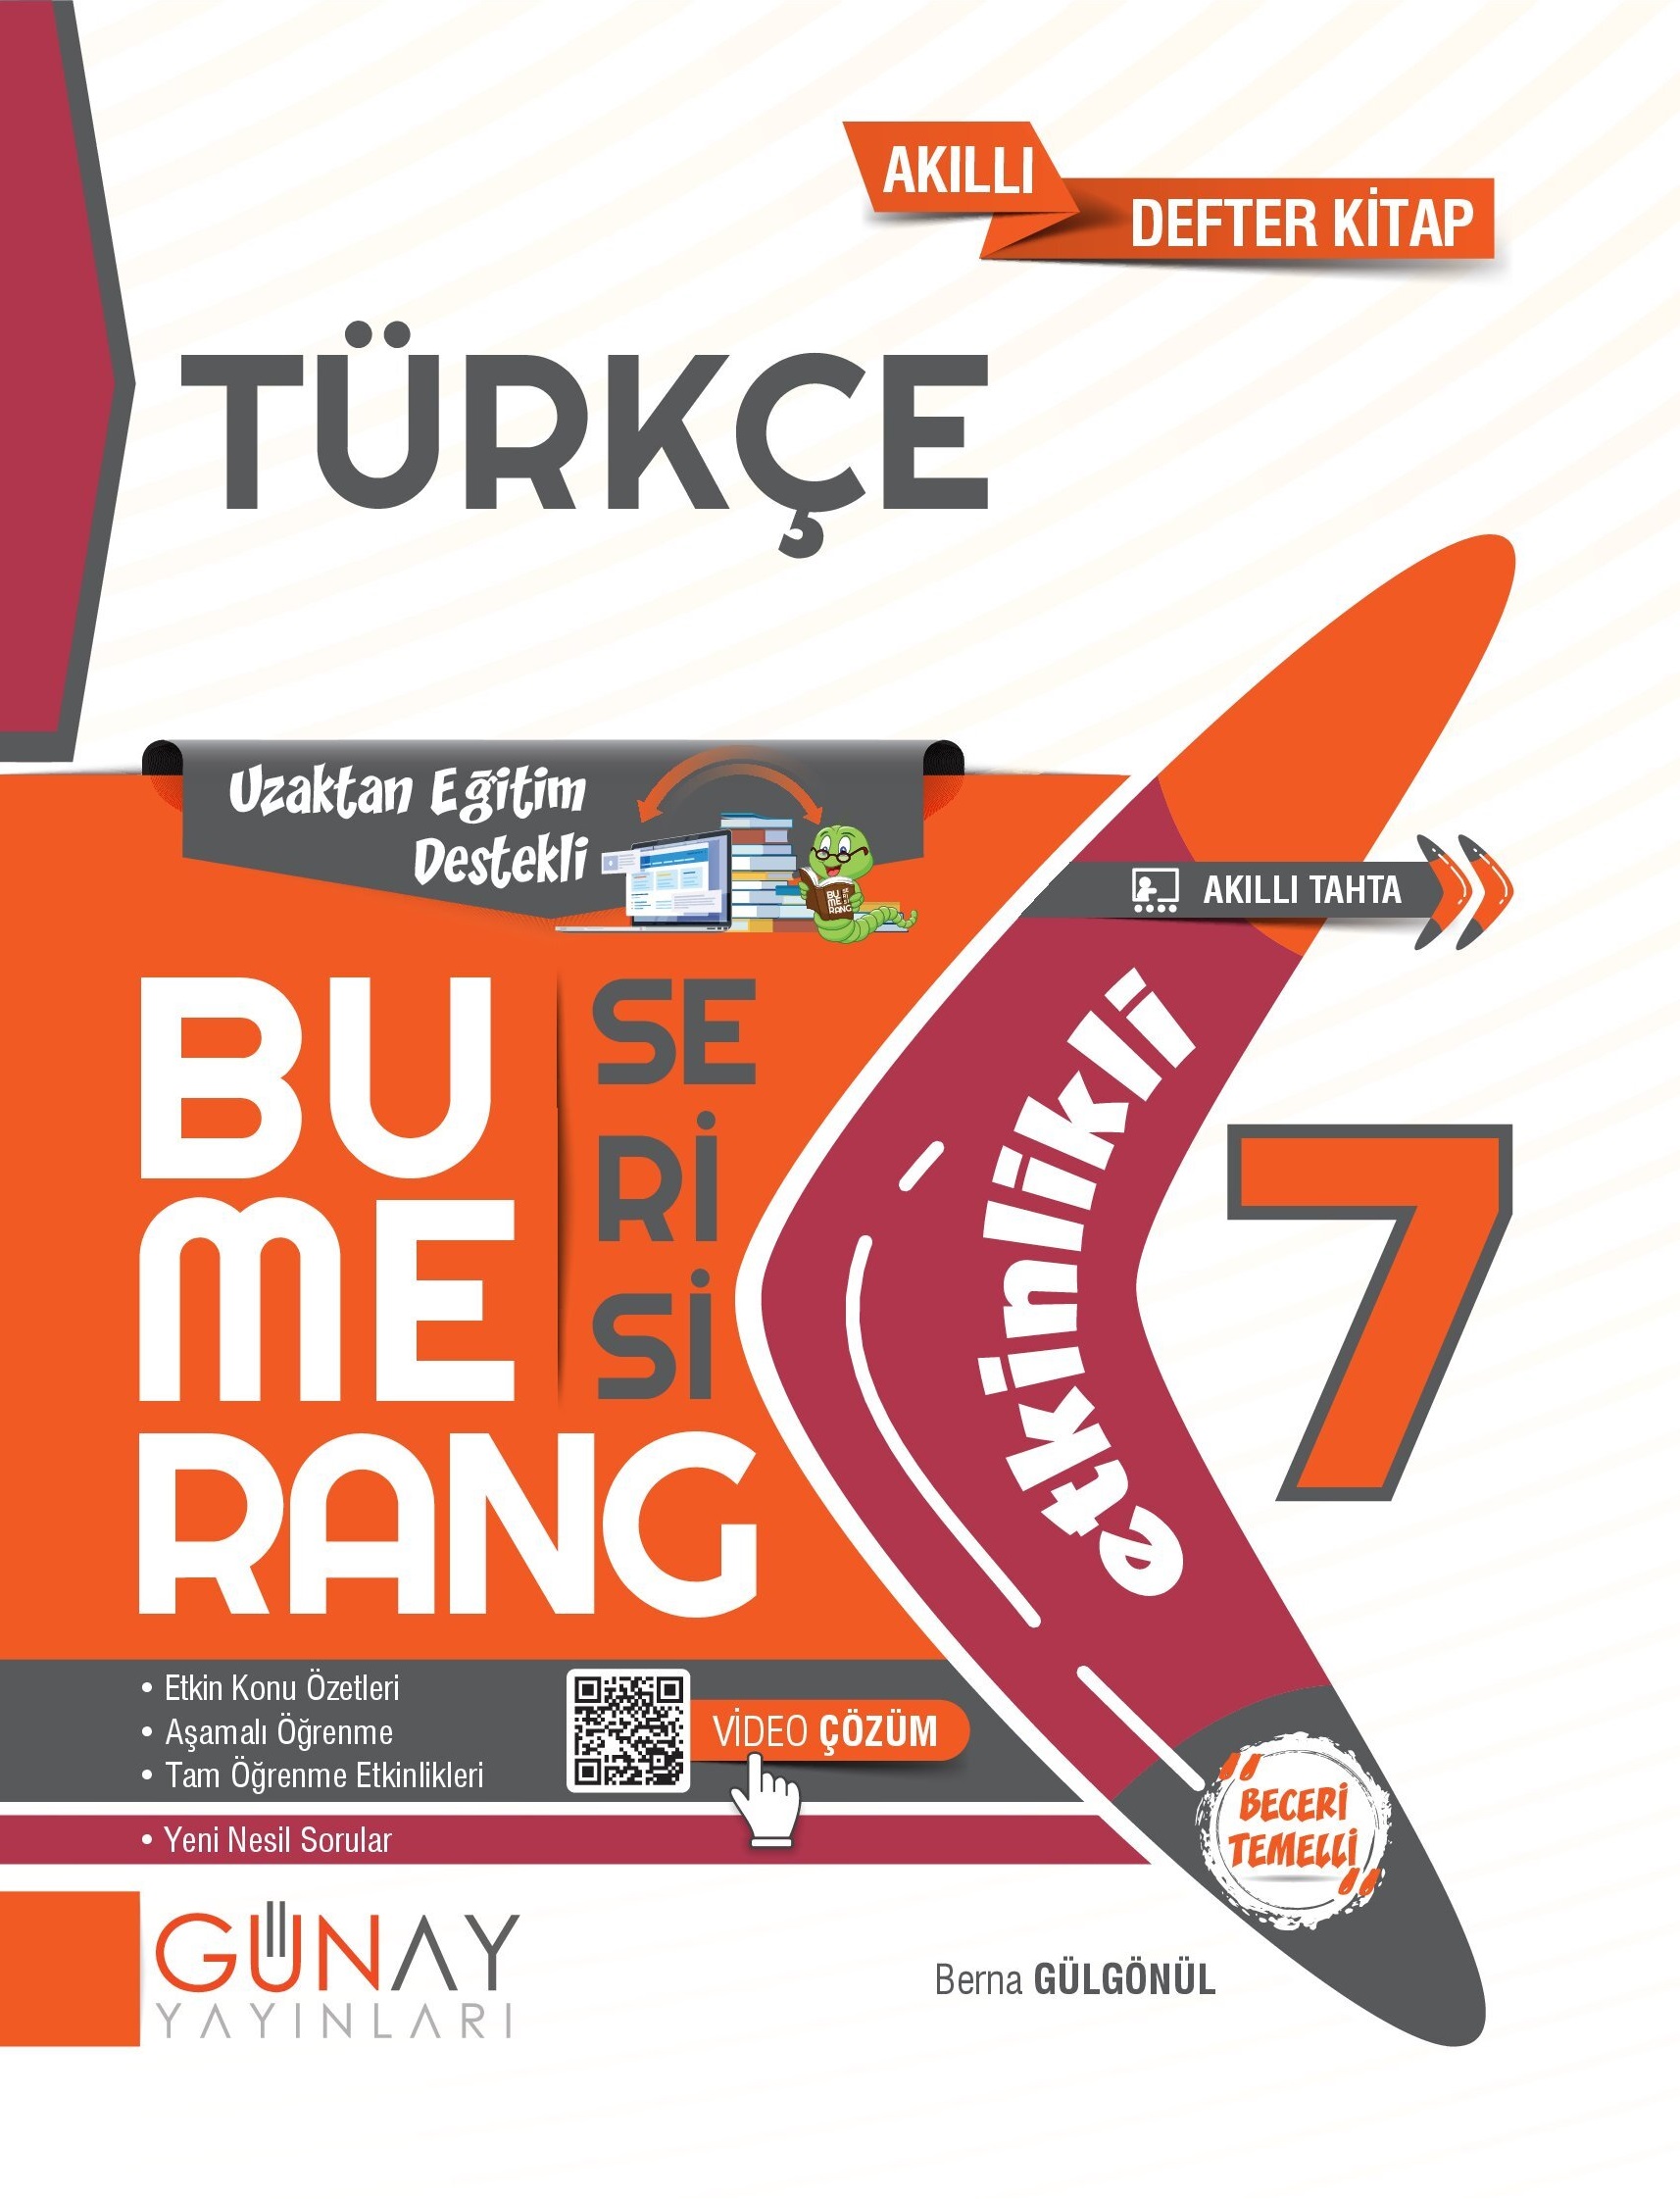 7 Bumerang Turkce